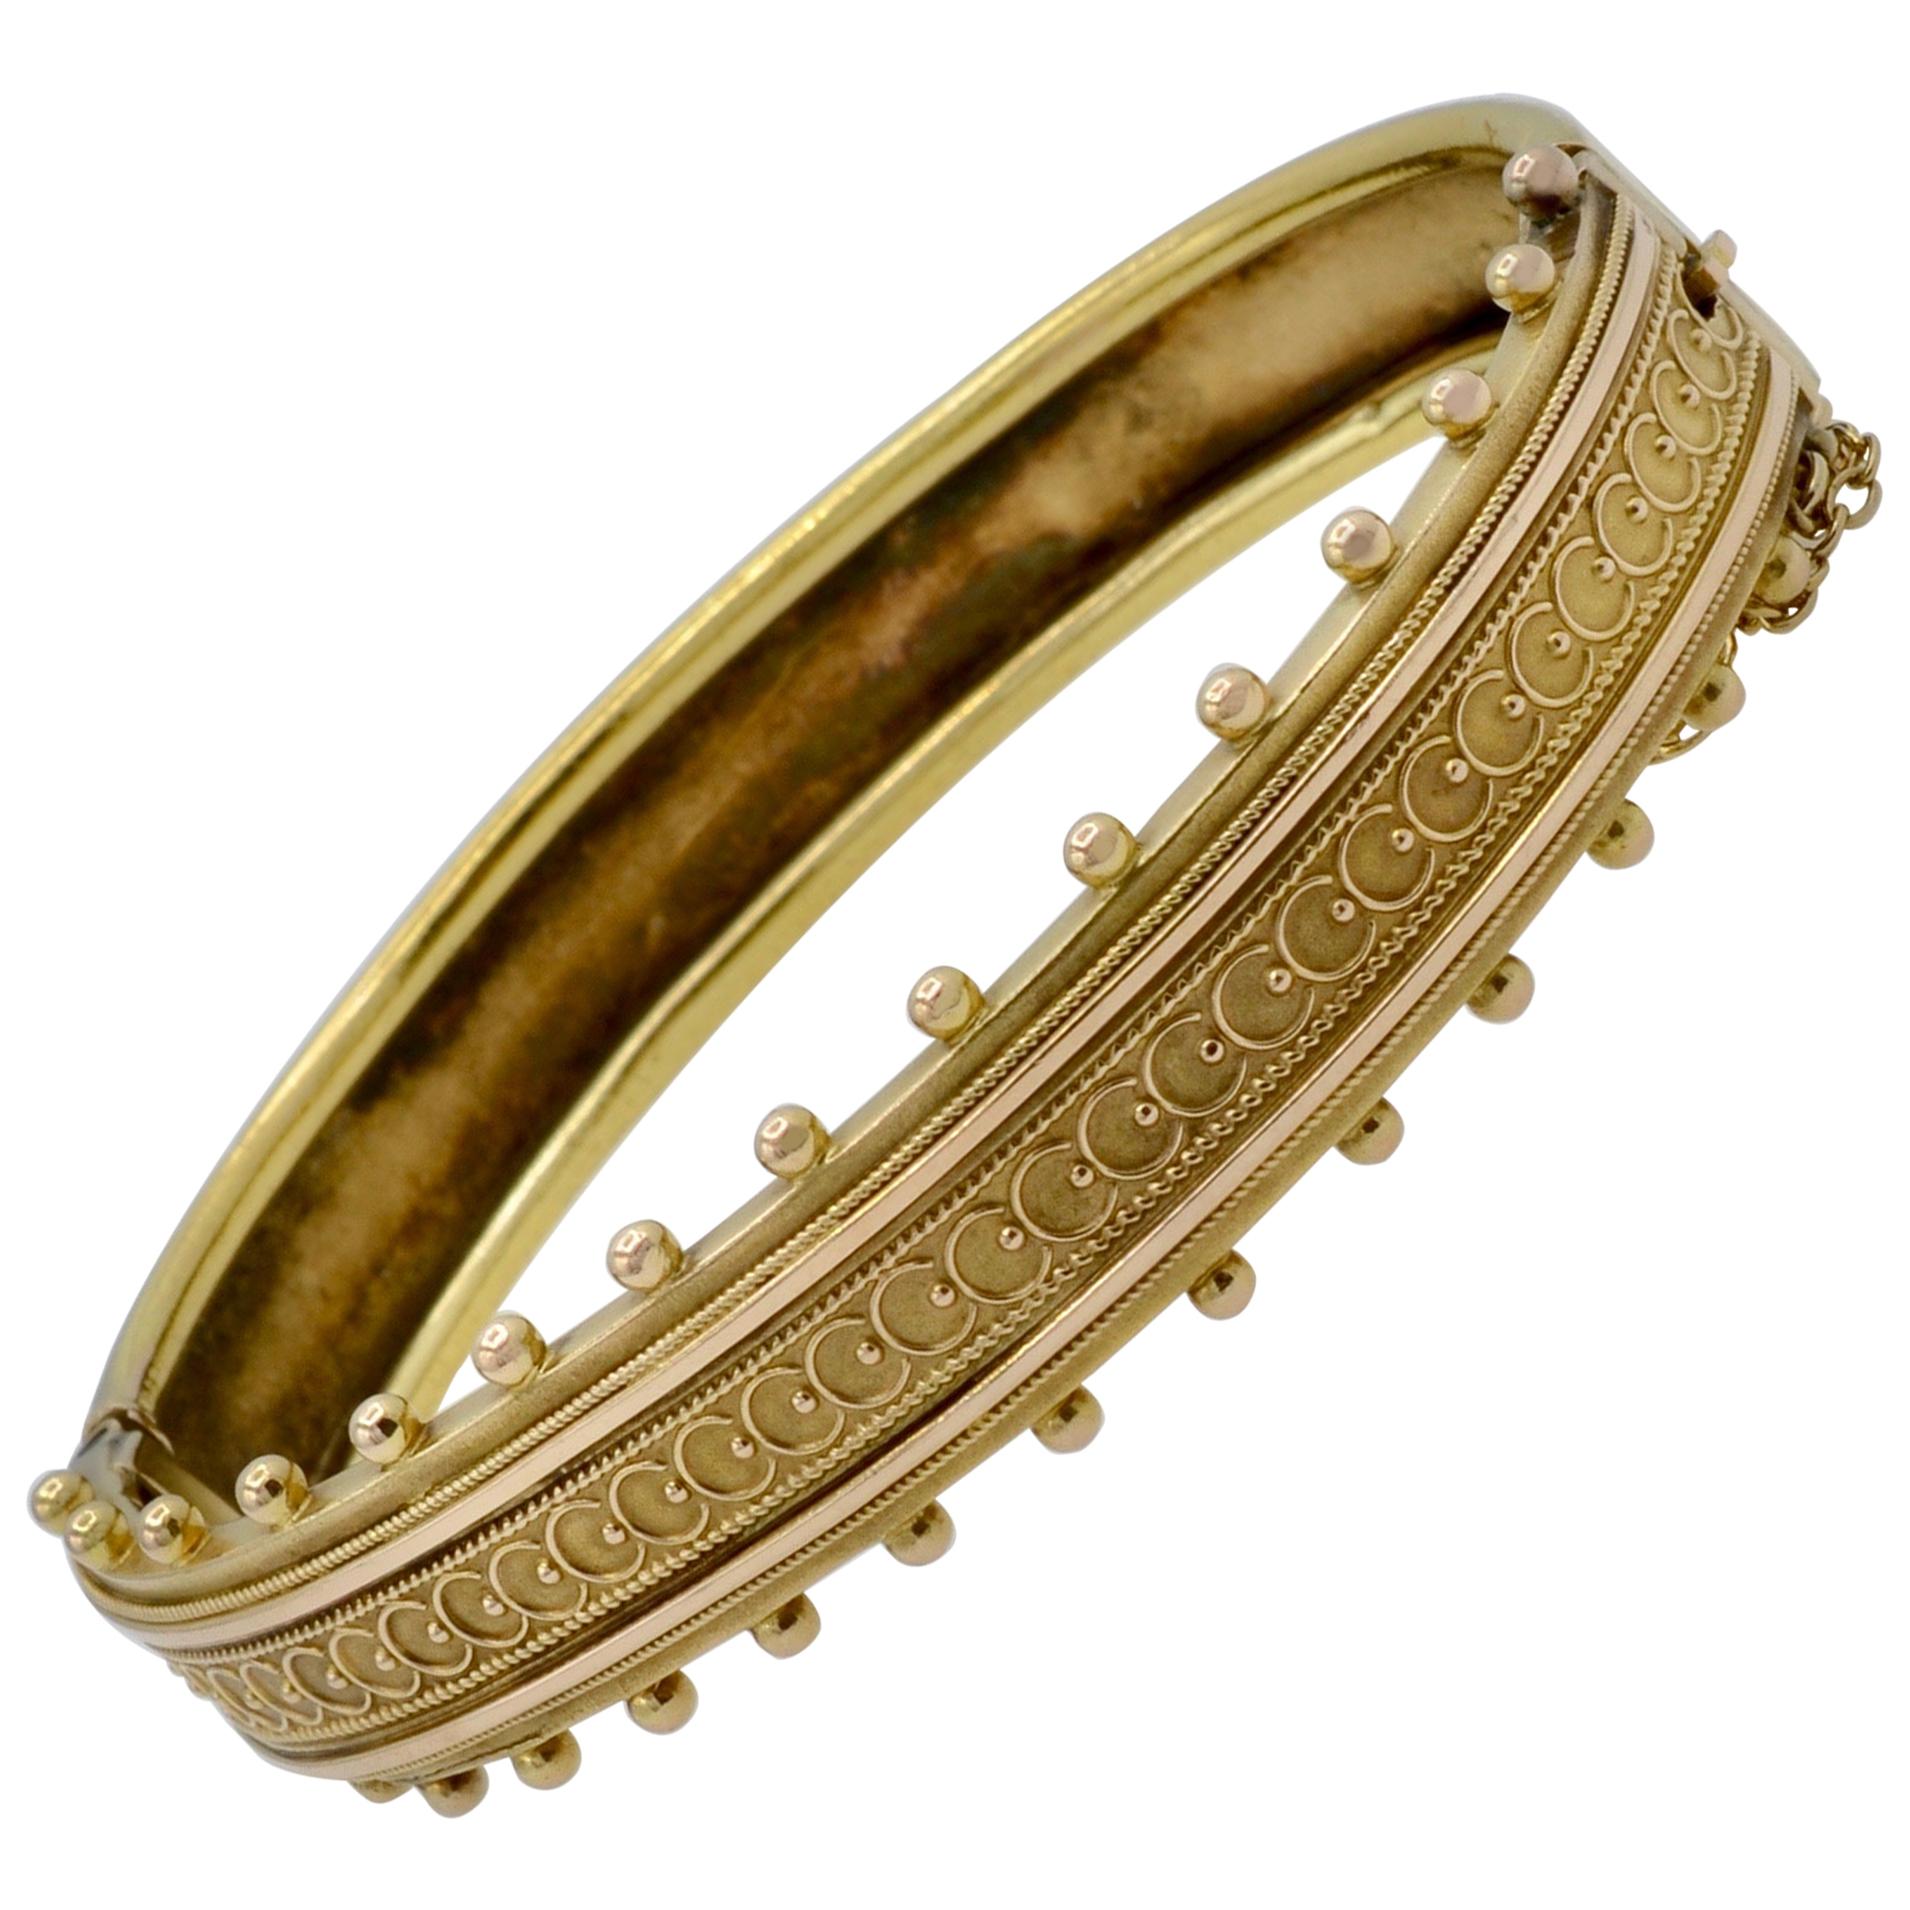 Ornate Victorian Bangle Bracelet in 14 Carat Gold